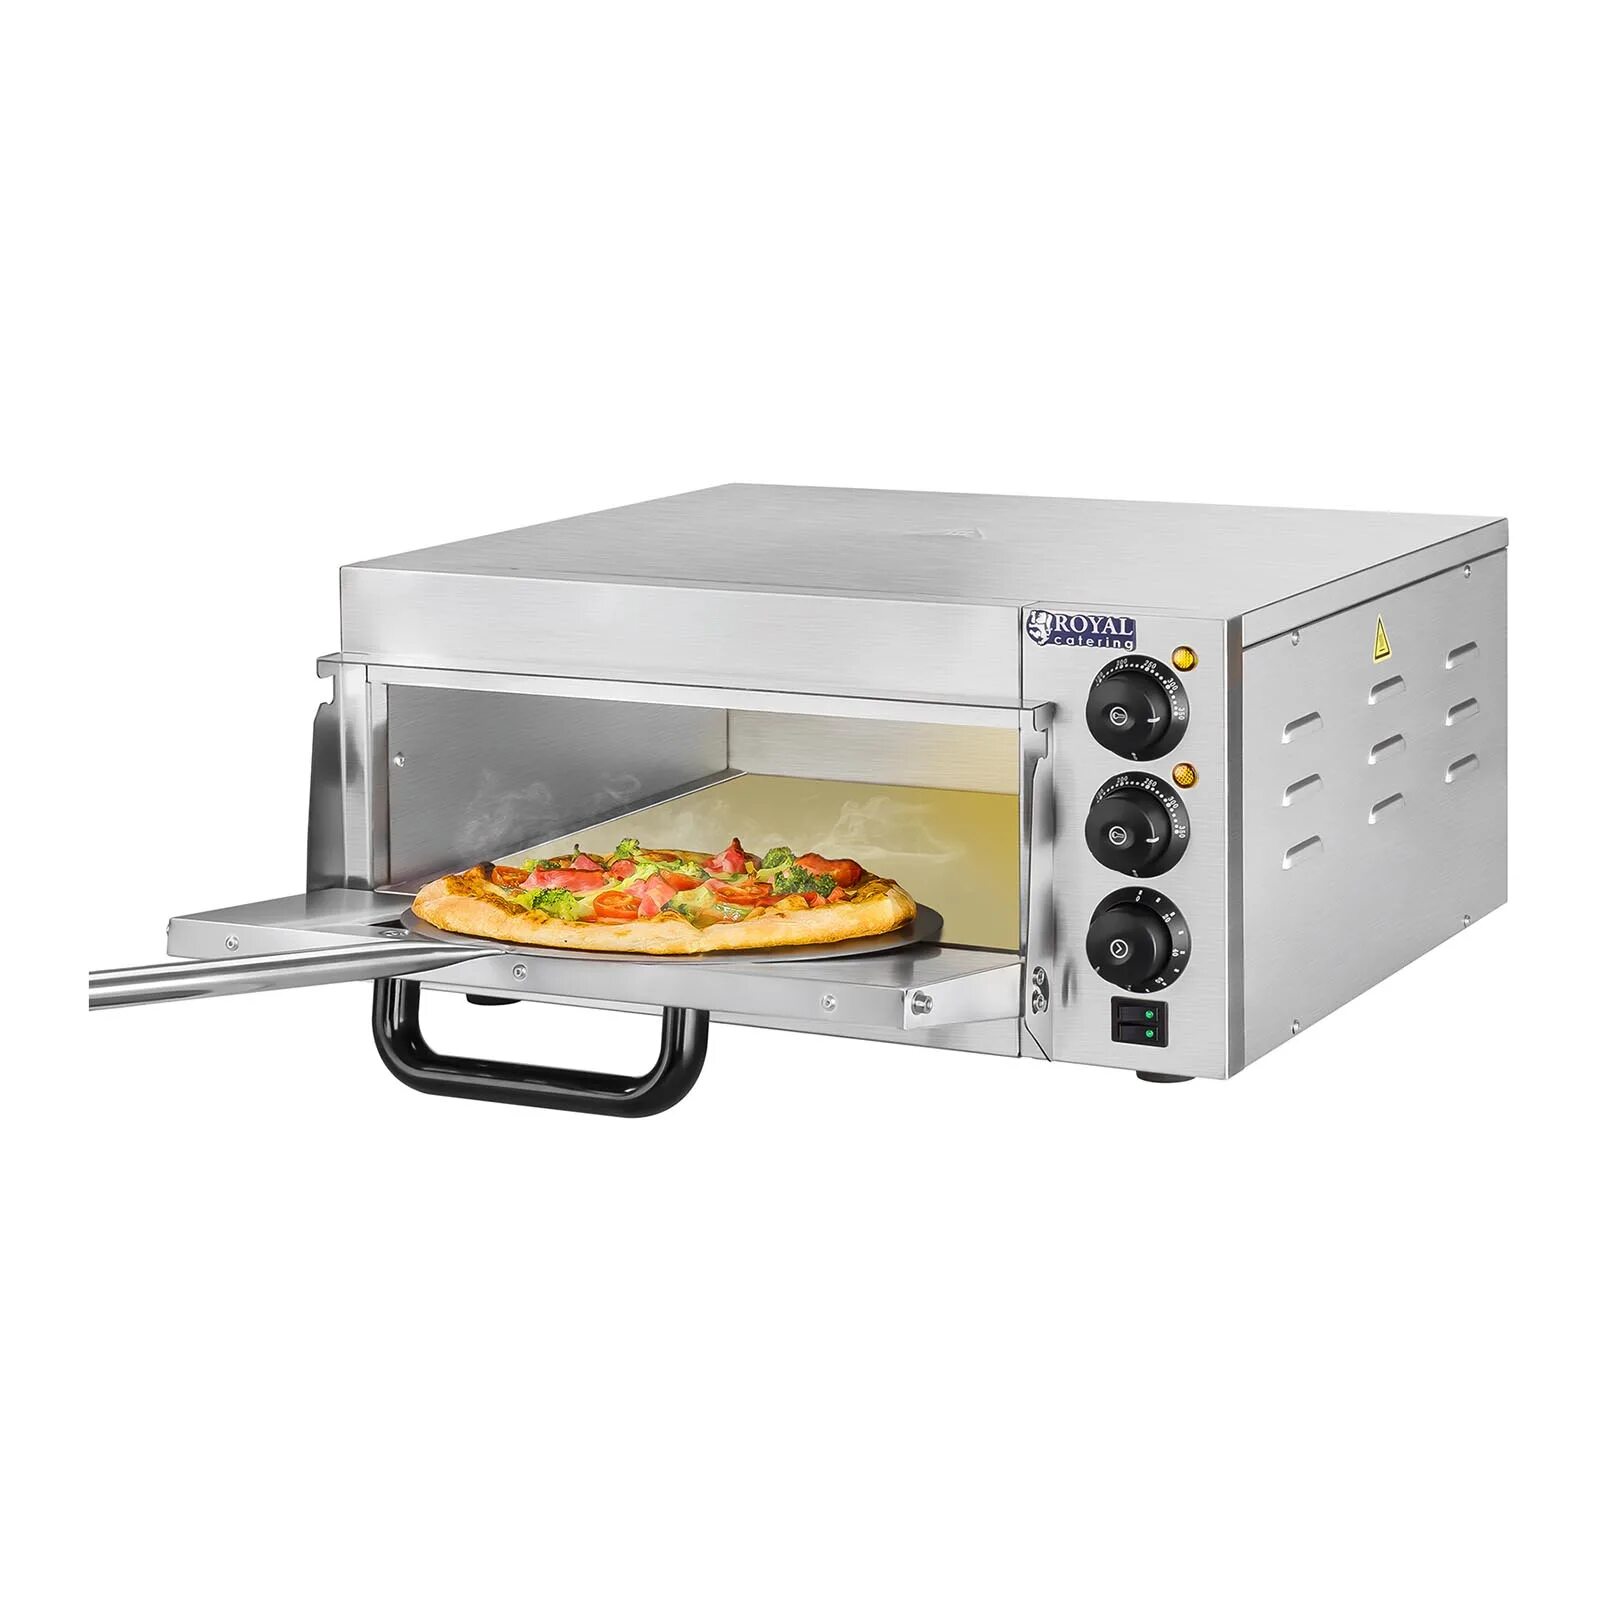 Купить духовку для пиццы. Печь для пиццы SGS po50. (Fimar, Италия) печь электрическая для пиццы с 2 камерами, 4 термостатами,. Печь электрическая для пиццы Hendi Kitchen line 4 2010 г. Пицца печь электрическая 380 одноярусная.